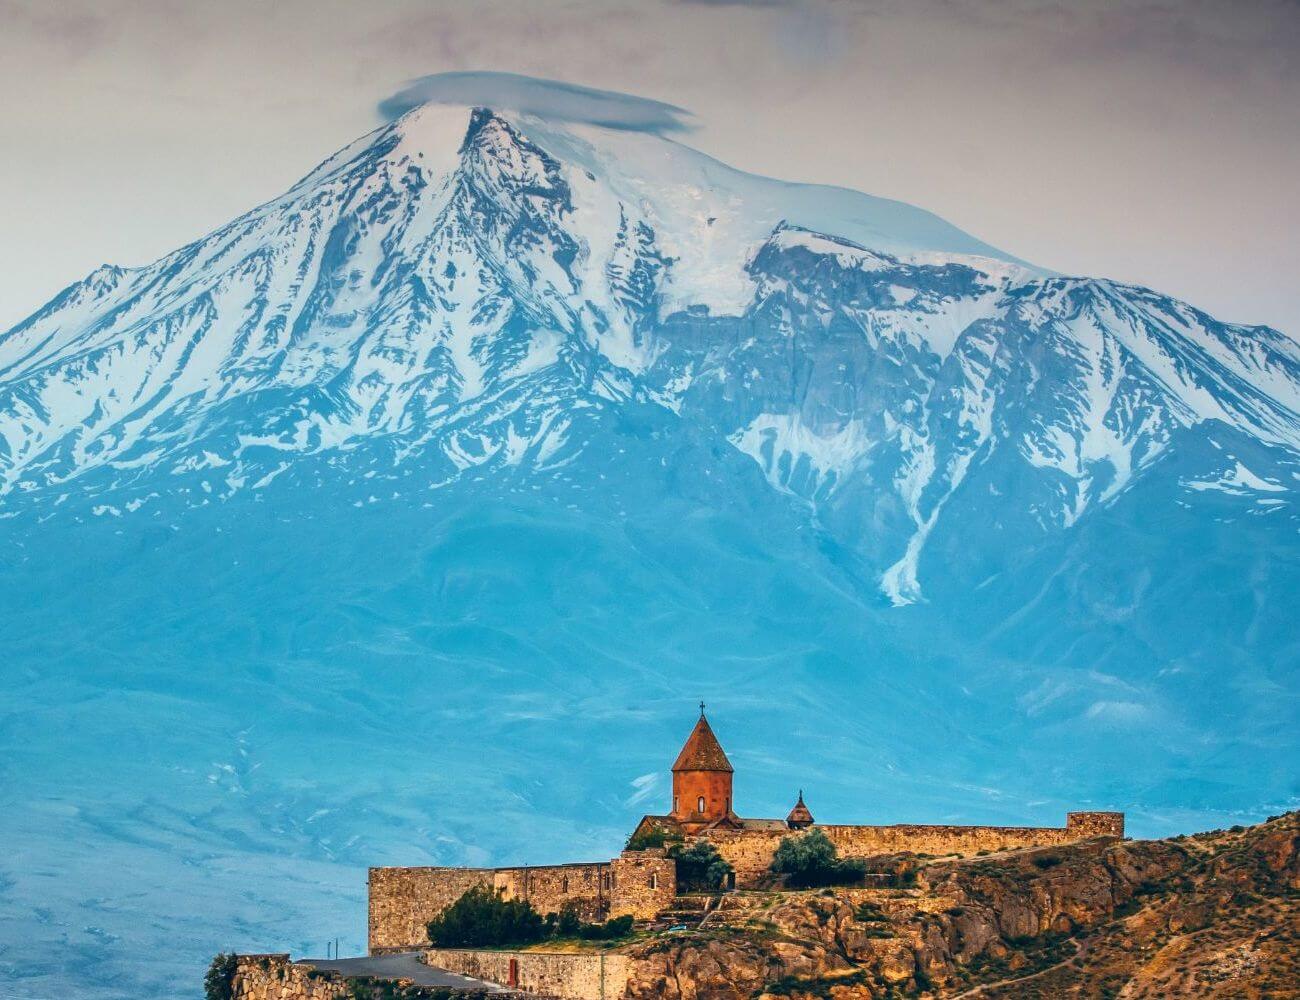 1-Day Armenia: Tour to Khor Virap, Noravank and Areni